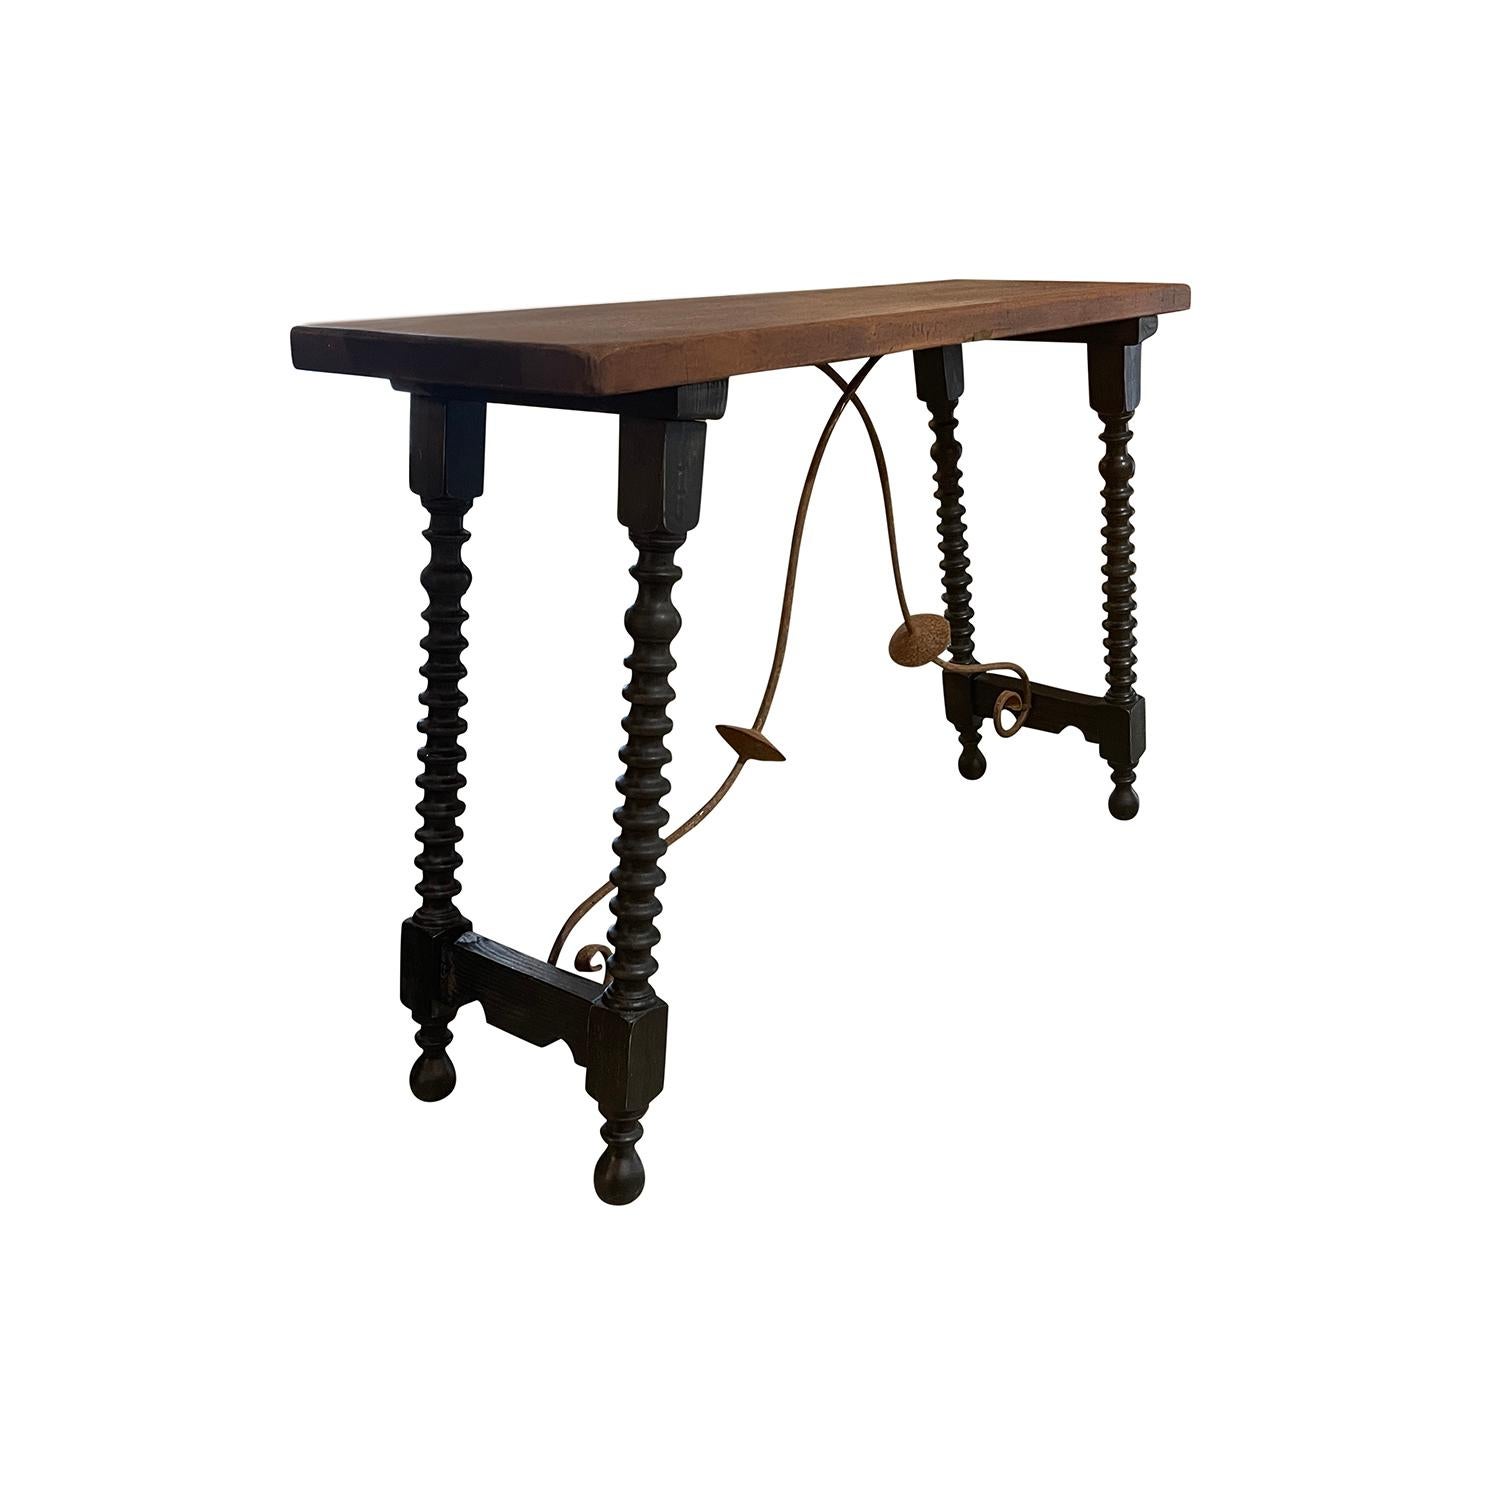 Ein antiker Tisch oder eine Konsole im toskanischen Renaissancestil des 19. Jahrhunderts ist mit einer warmen und reichhaltig gefärbten rechteckigen Tischplatte aus Nussbaumholz versehen, die sich in gutem Zustand befindet. Der Tisch hat